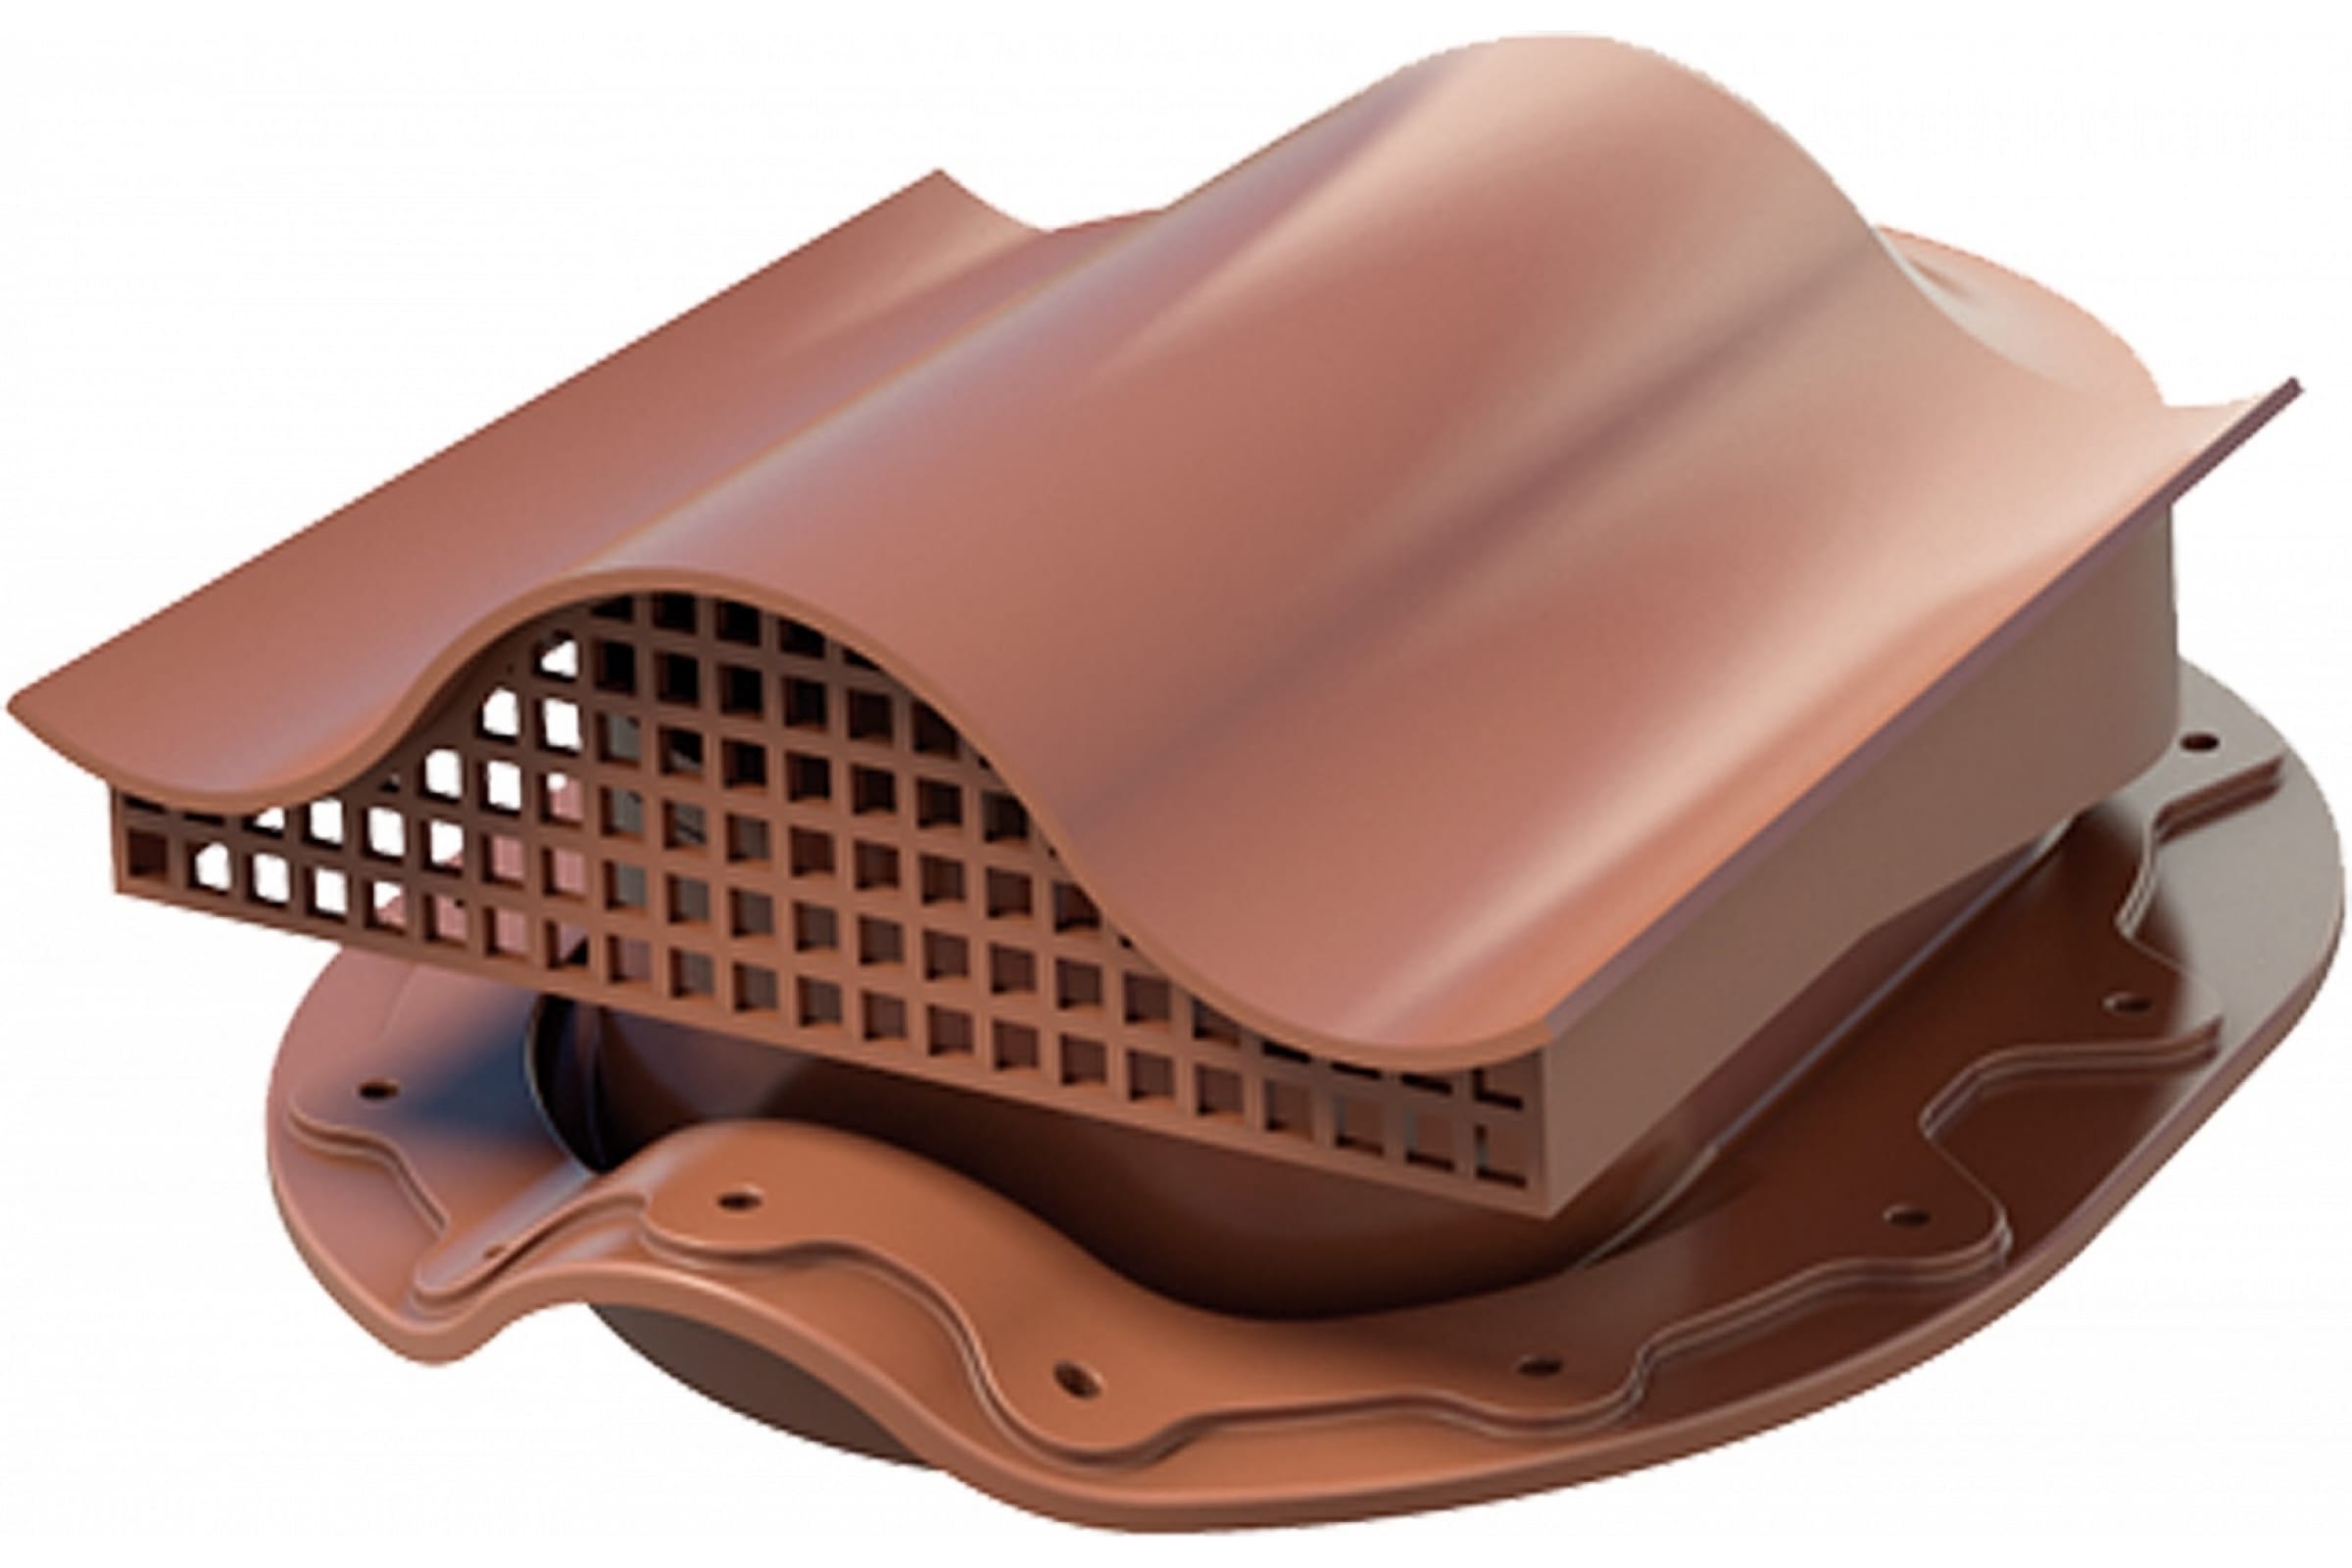 Технониколь Вентиль SKAT Monterrey кровельный , коричневый, шт. TN376148 ктв вентиль prof 20 для металлопрофиля коричневый